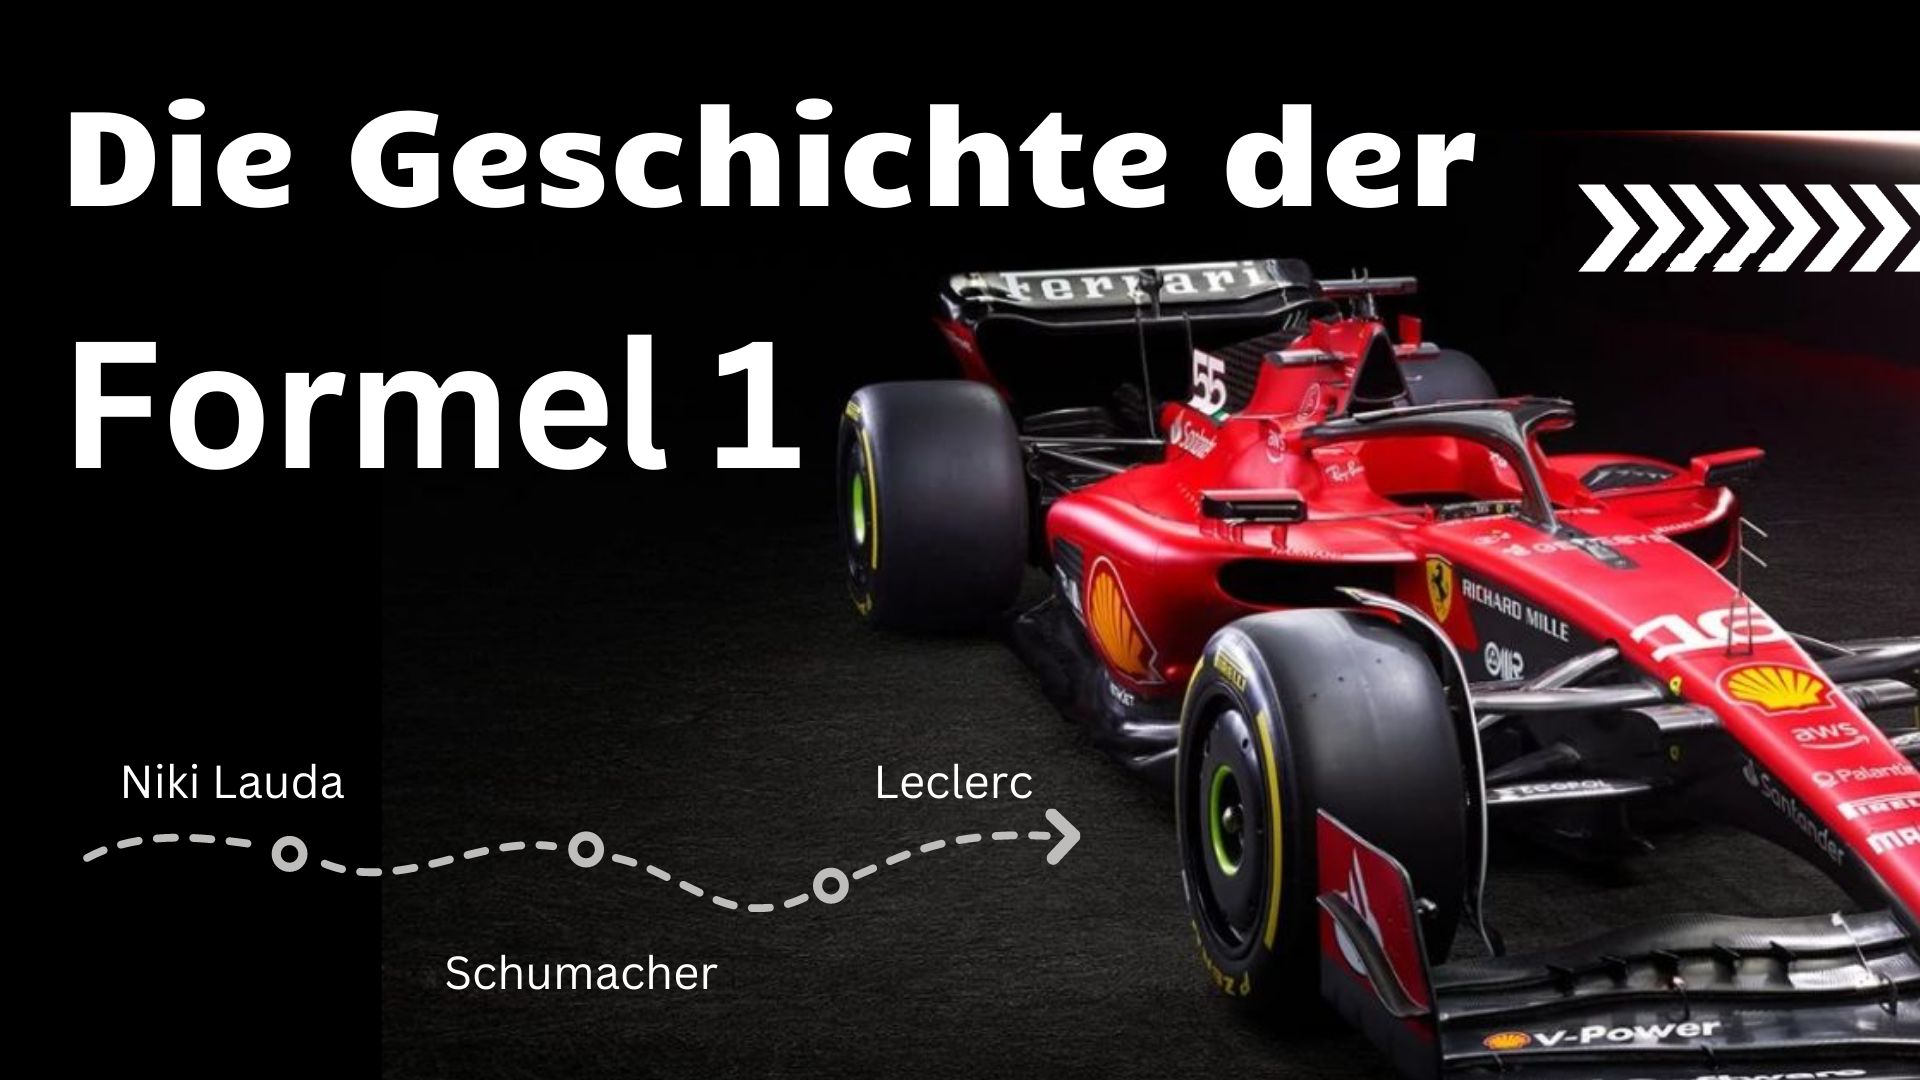 Die Geschichte der Formel 1